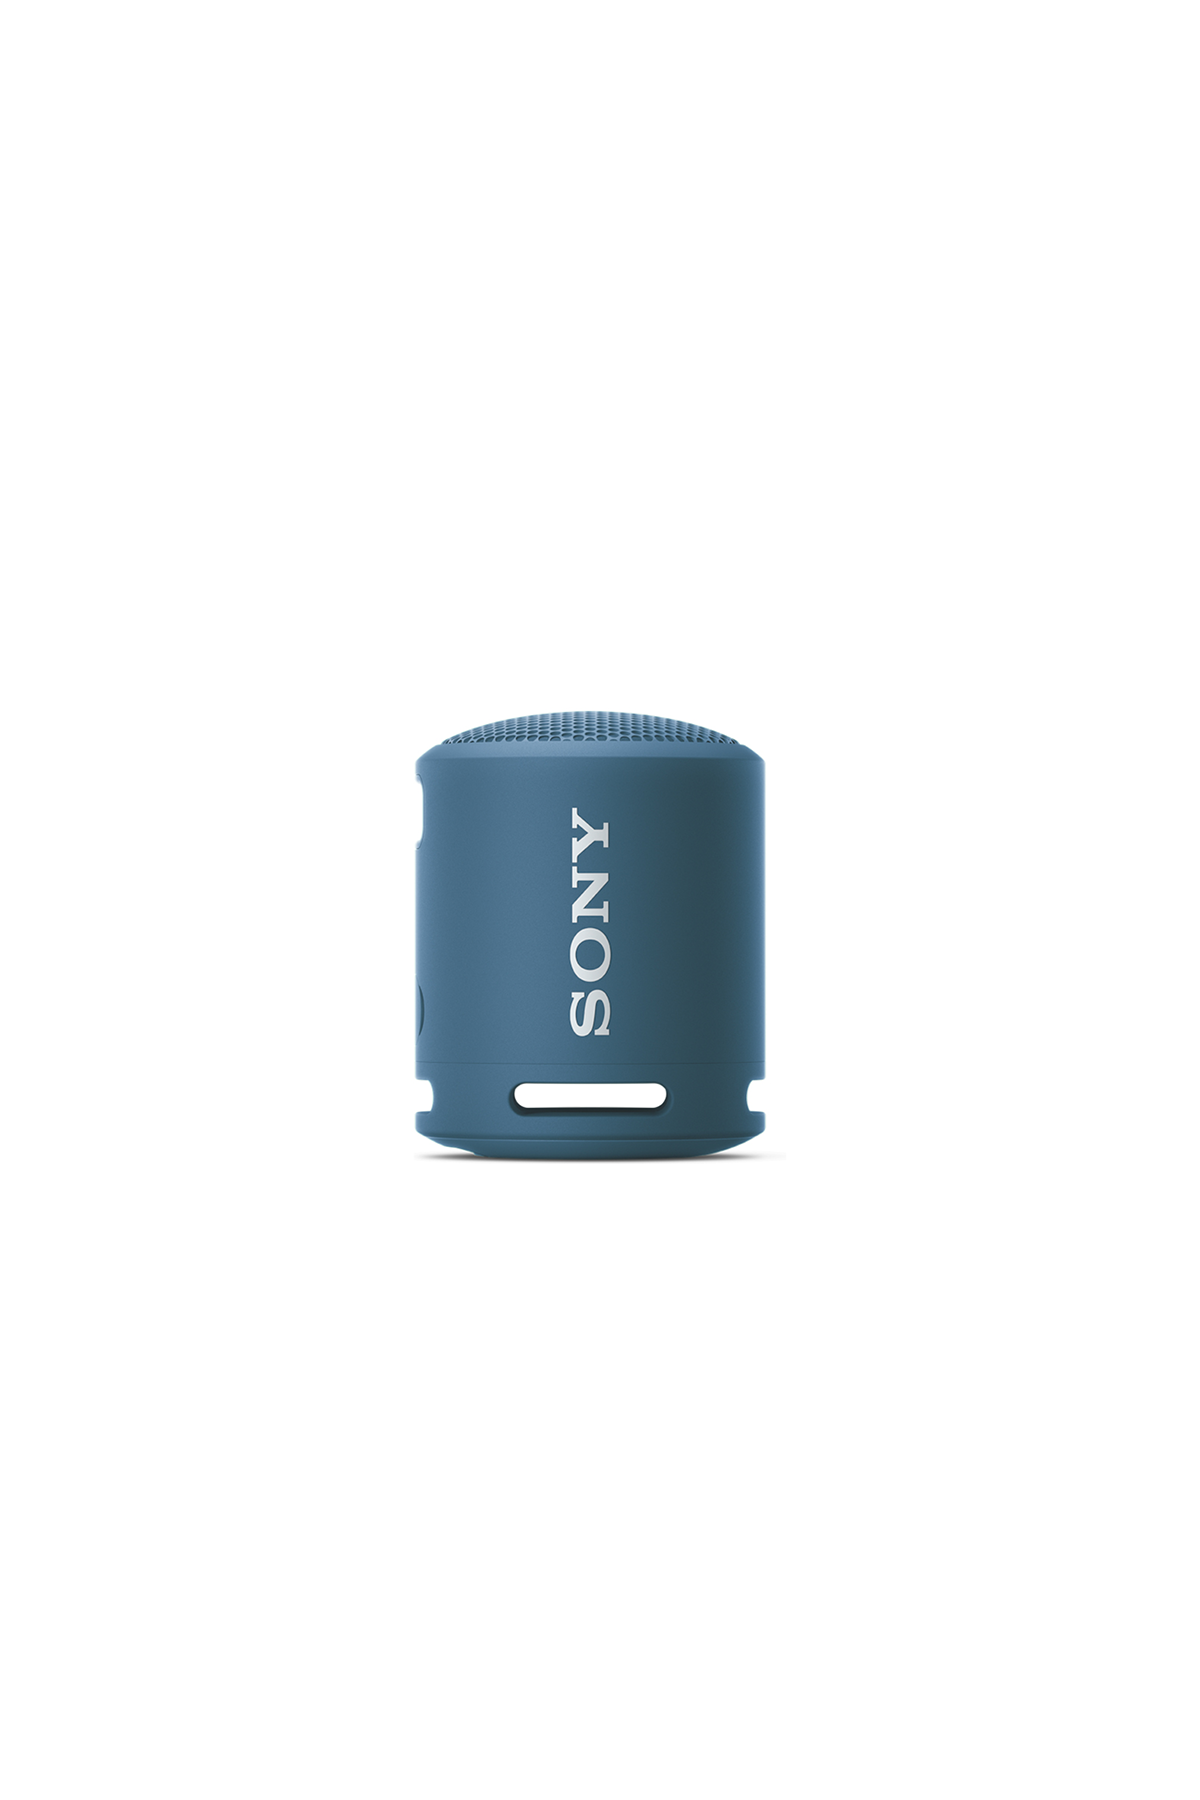 Sony Mini Wireless Speaker